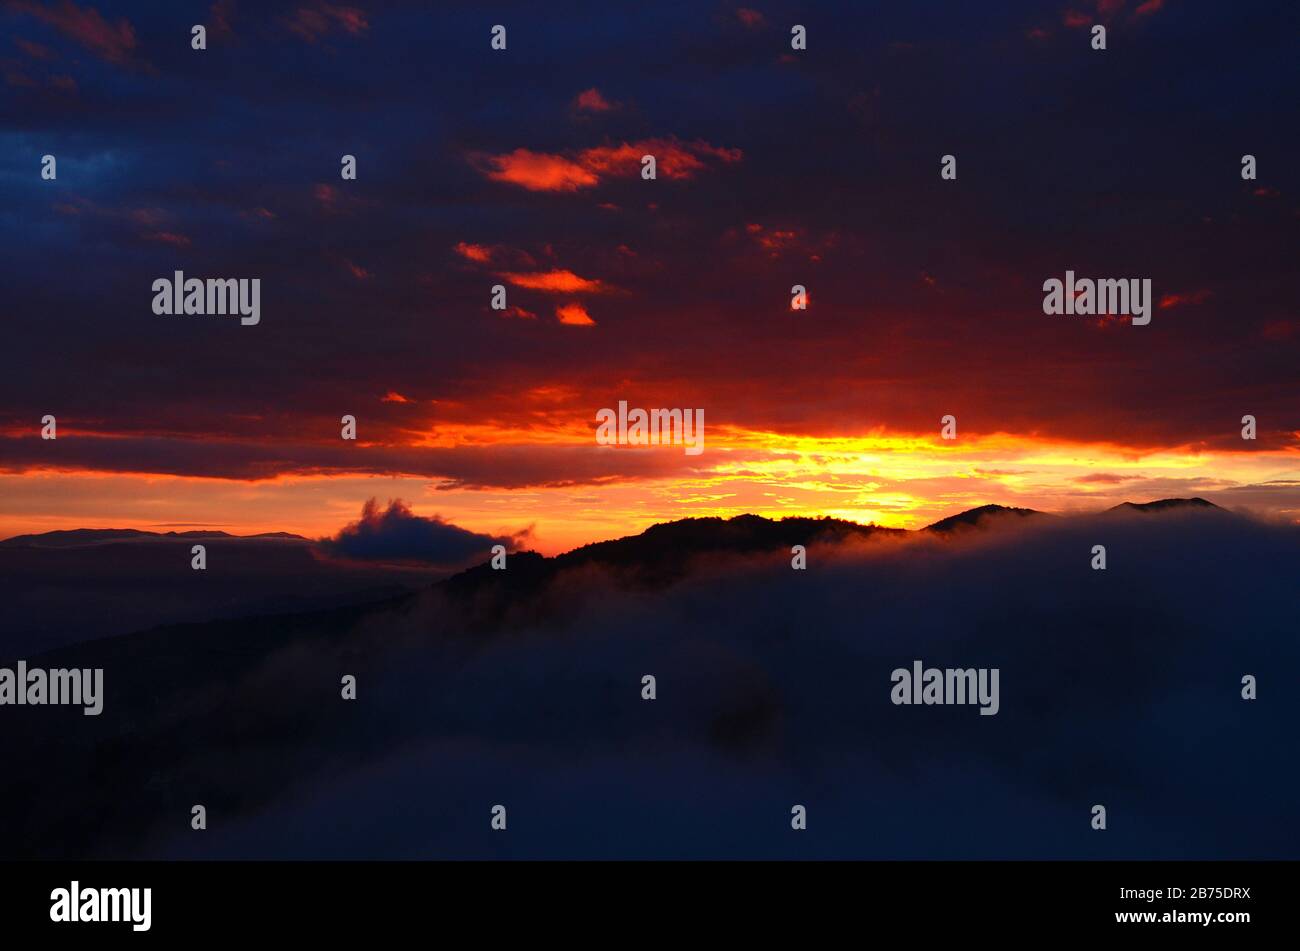 Italian sunsets: Fumone. Stock Photo